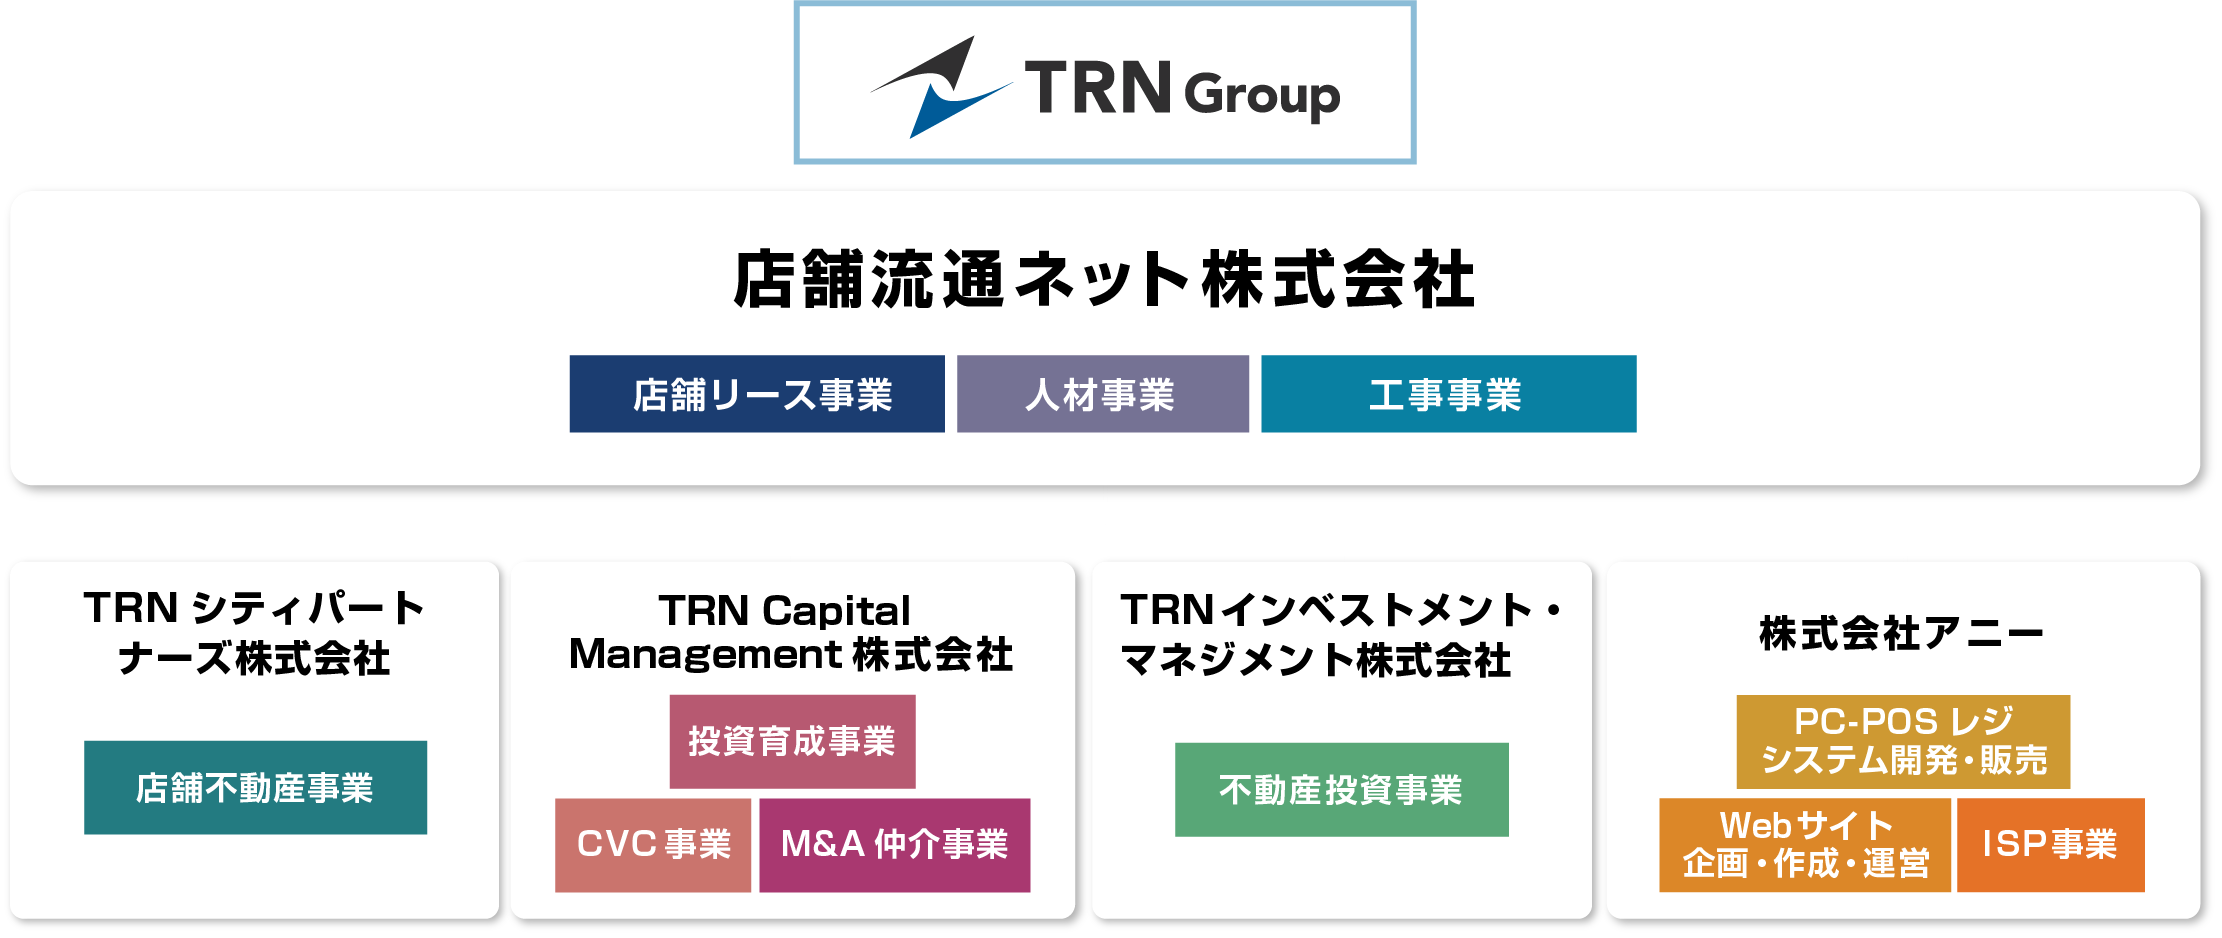 TRNグループ 組織図